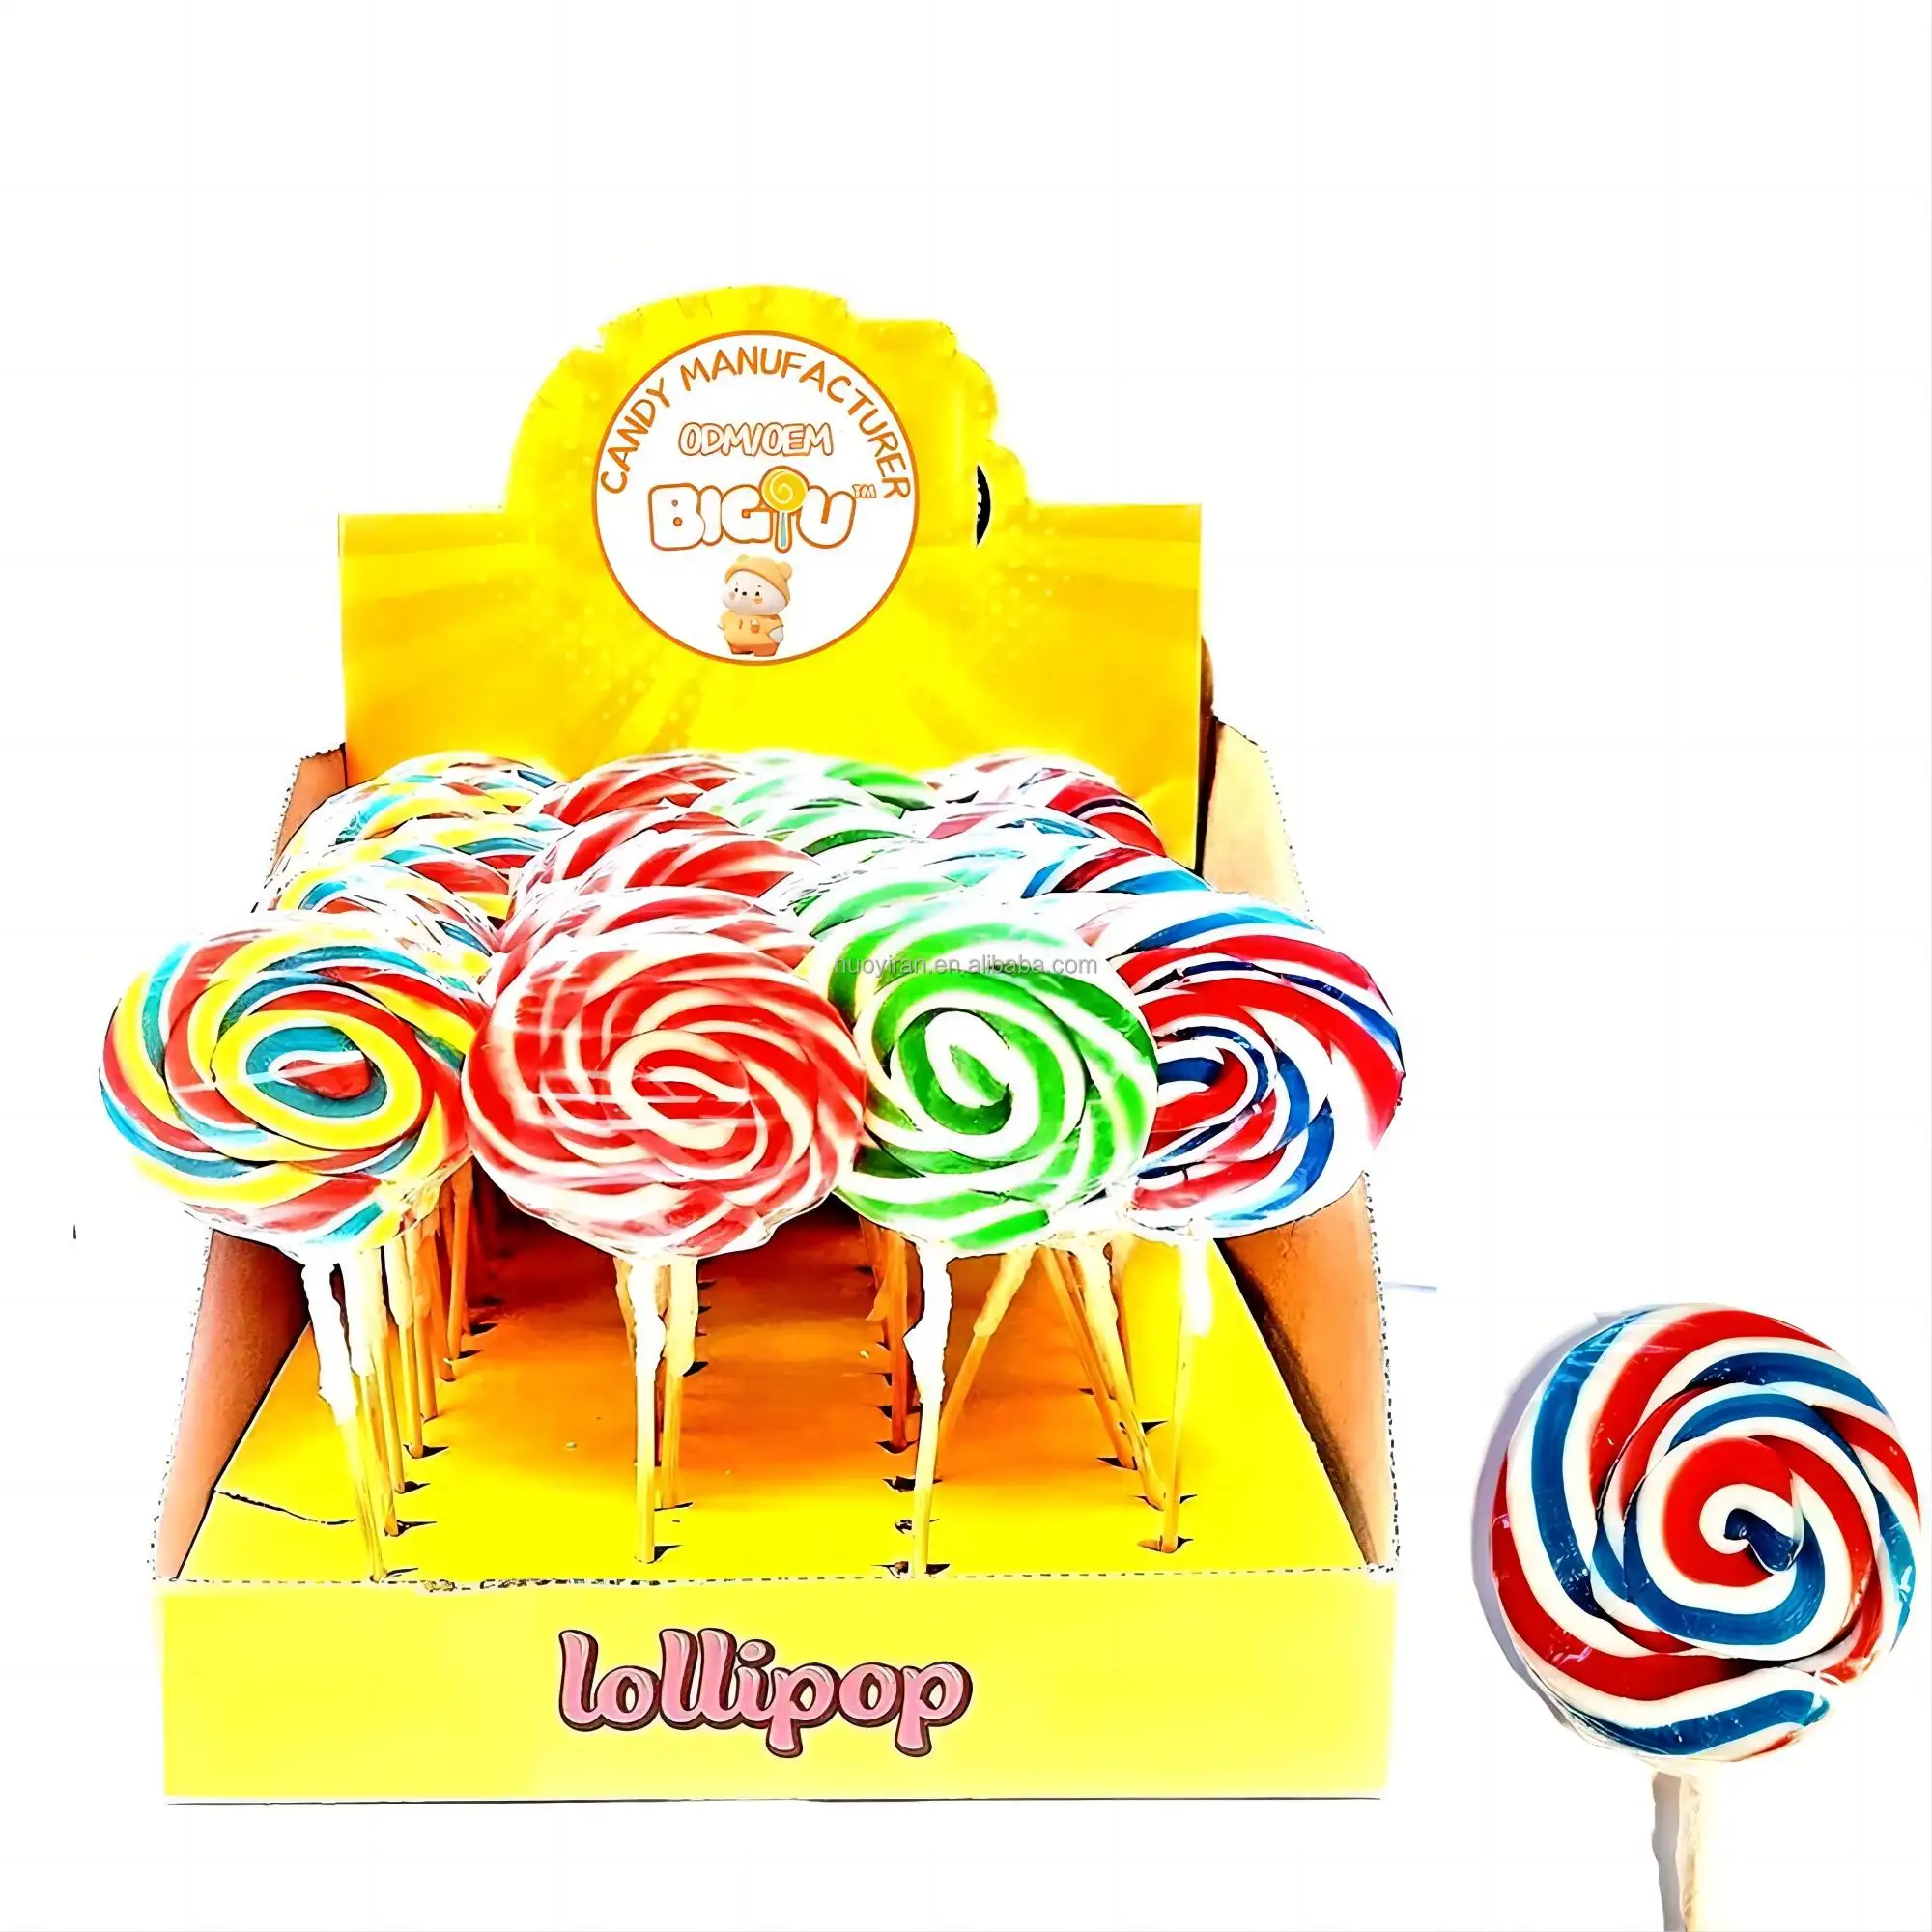 Personalización de etiqueta privada Piruletas individuales Variedad Fiesta Multicolor Remolino Candy Loly Pop Piruleta dulces